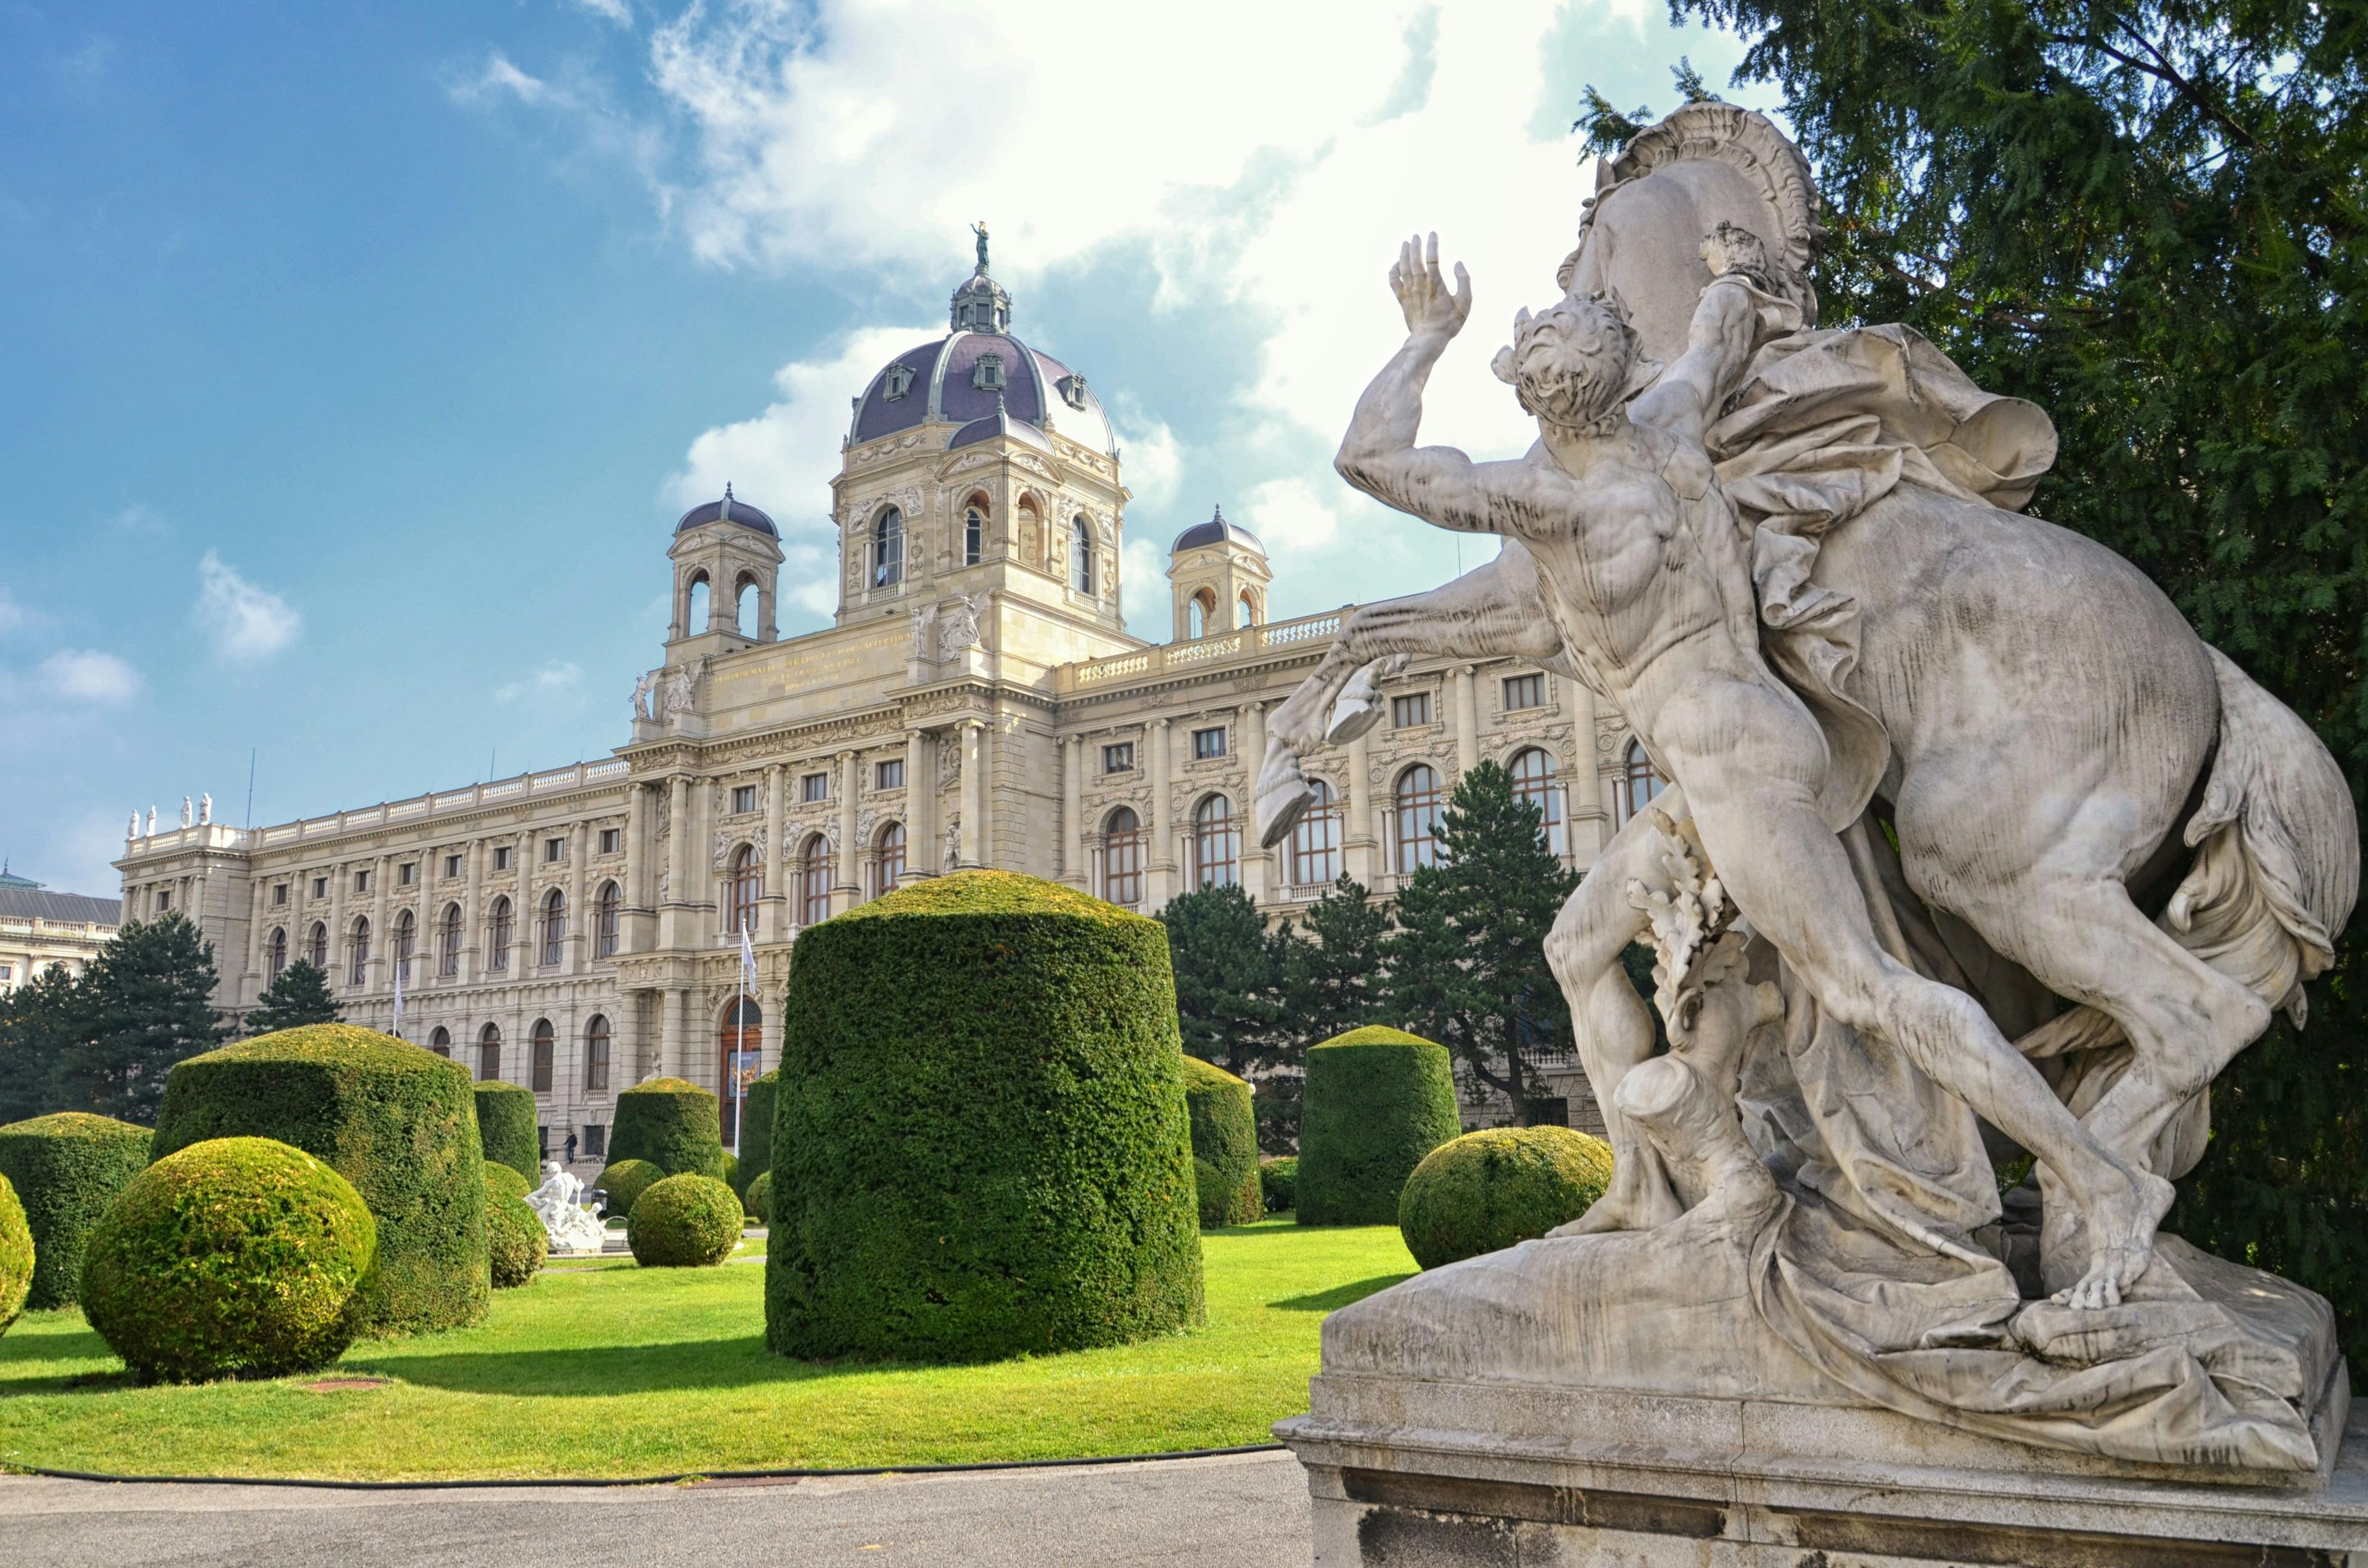 City of Vienna in Austria